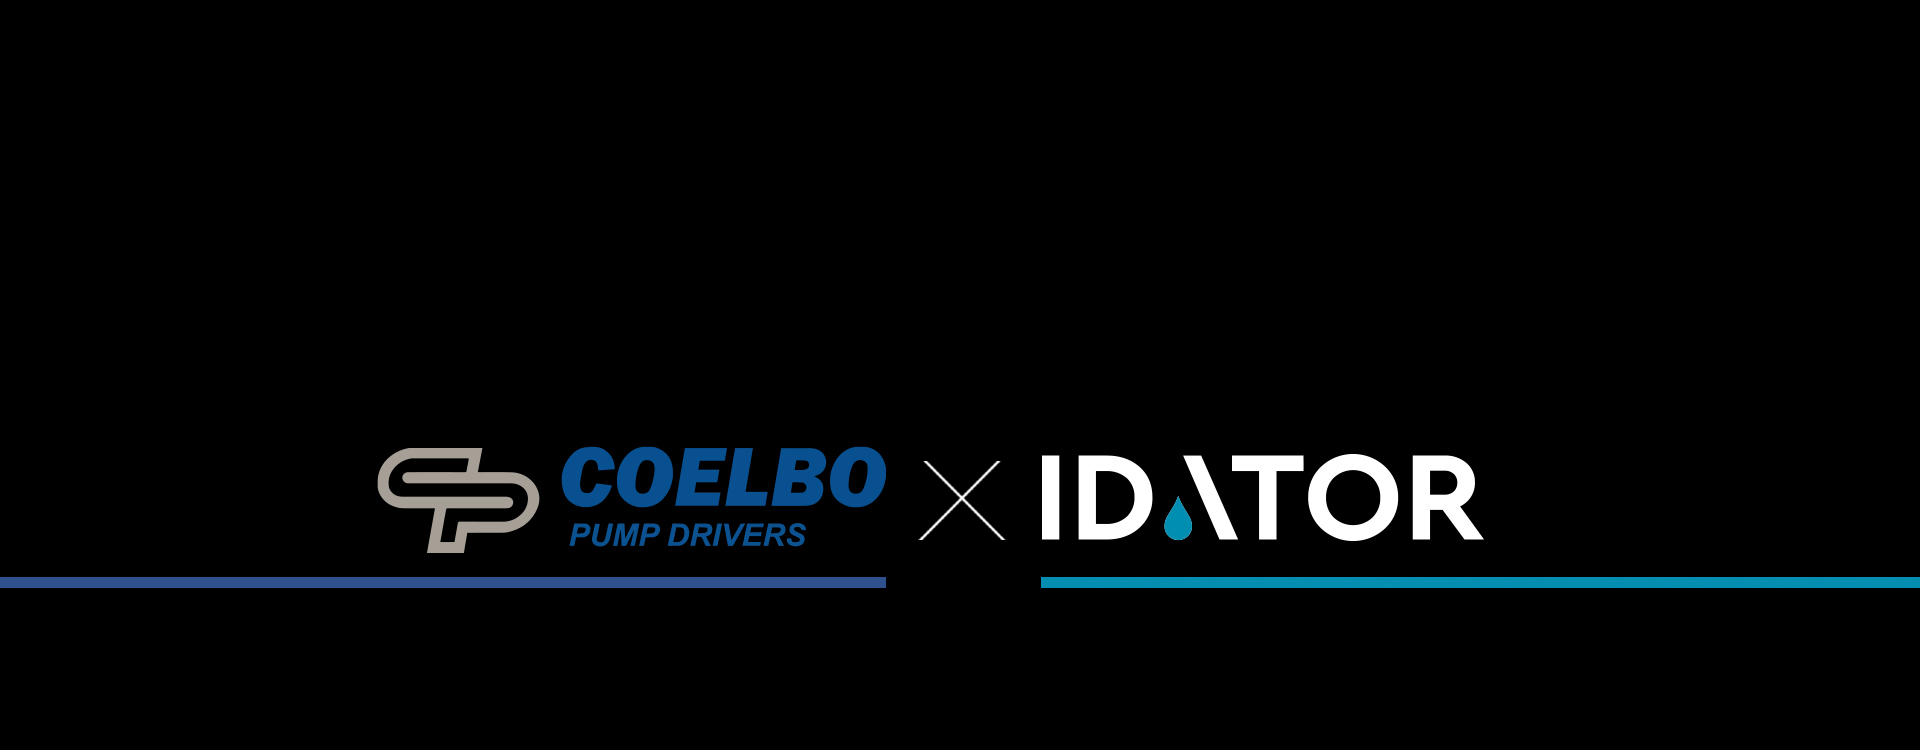 COELBO: H νέα συνεργασία της Idator